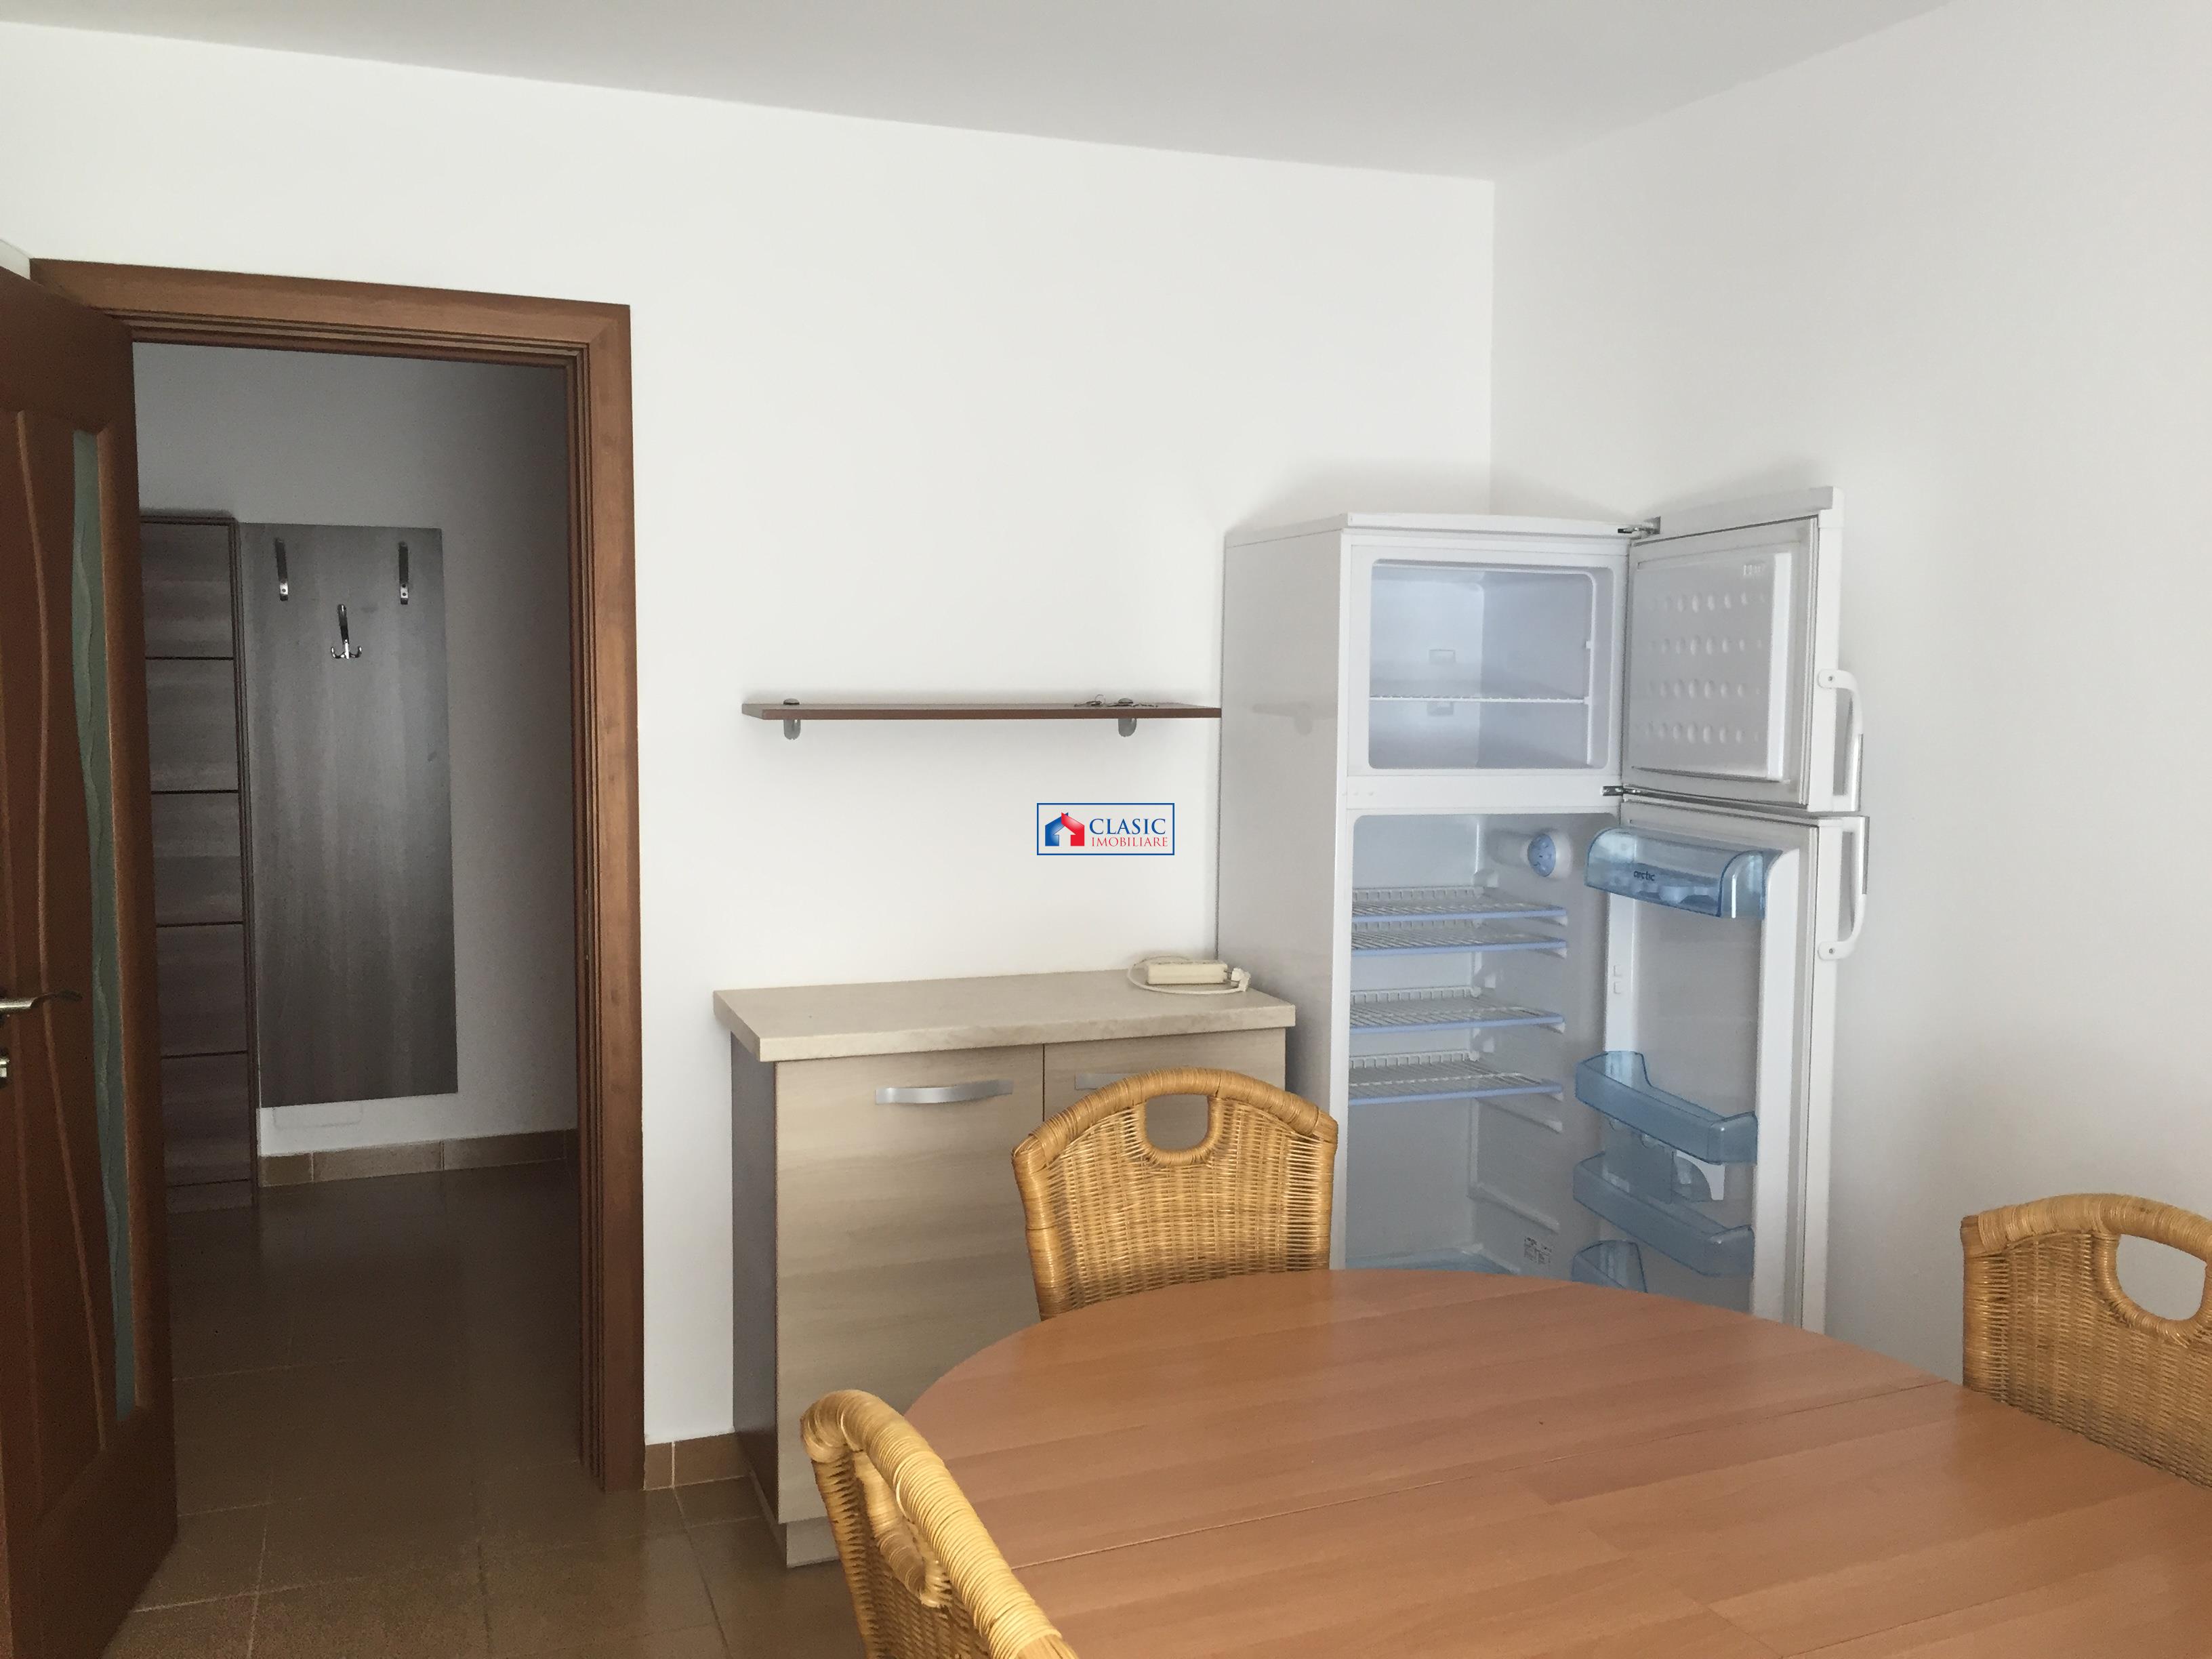 Inchiriere apartament 4 camere bloc nou modern in Zorilor  Hasdeu, Cluj Napoca